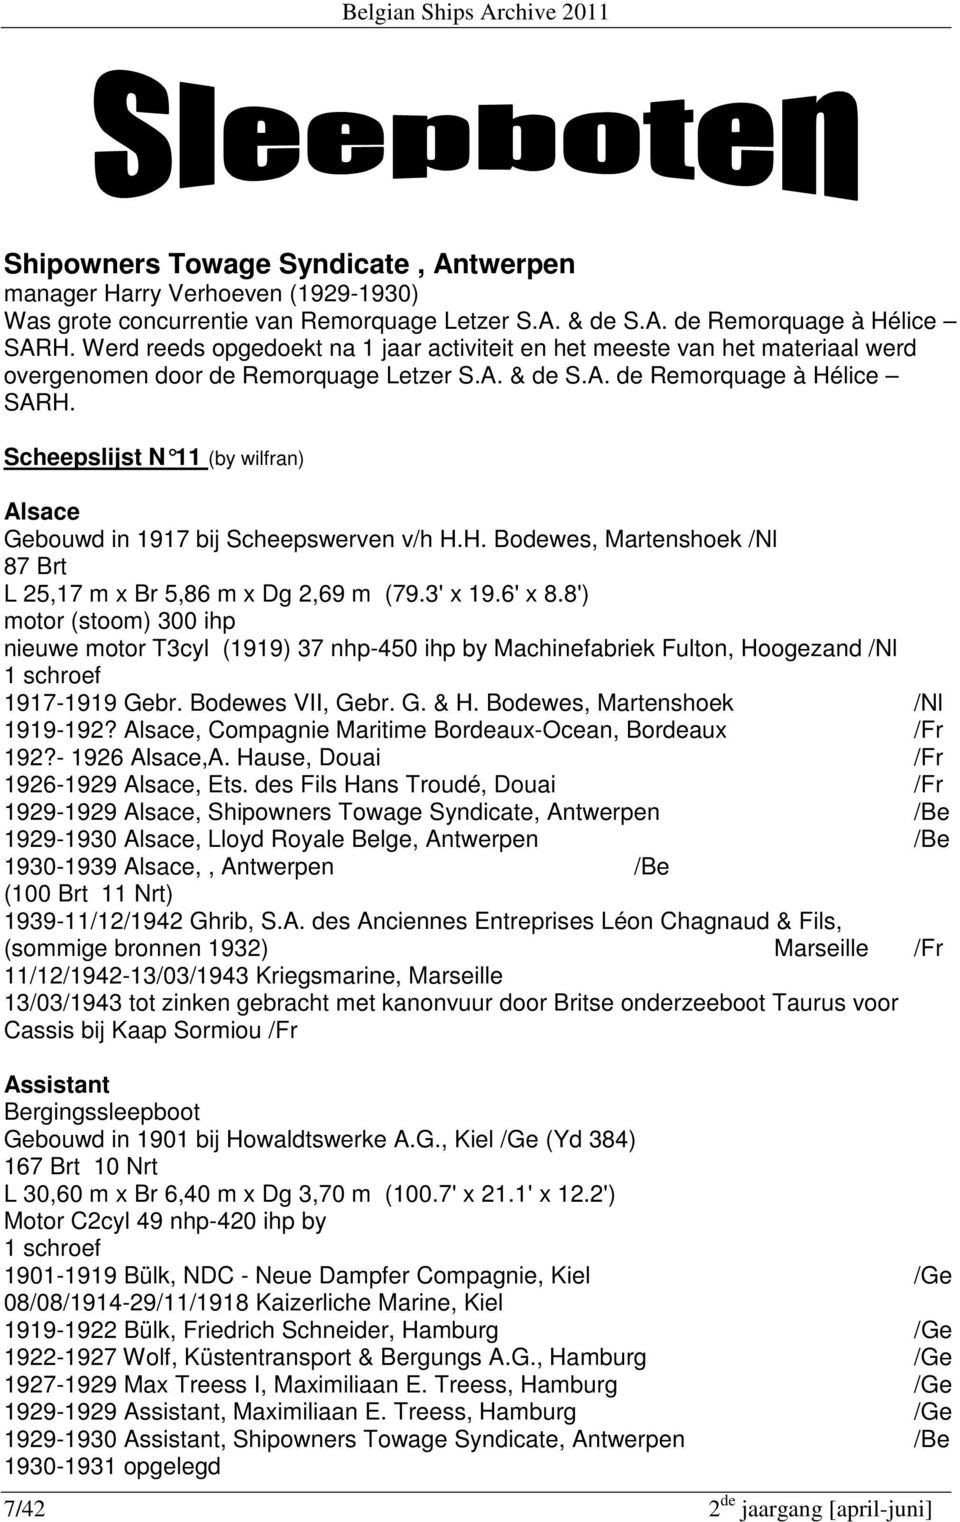 Scheepslijst N 11 (by wilfran) Alsace Gebouwd in 1917 bij Scheepswerven v/h H.H. Bodewes, Martenshoek /Nl 87 Brt L 25,17 m x Br 5,86 m x Dg 2,69 m (79.3' x 19.6' x 8.